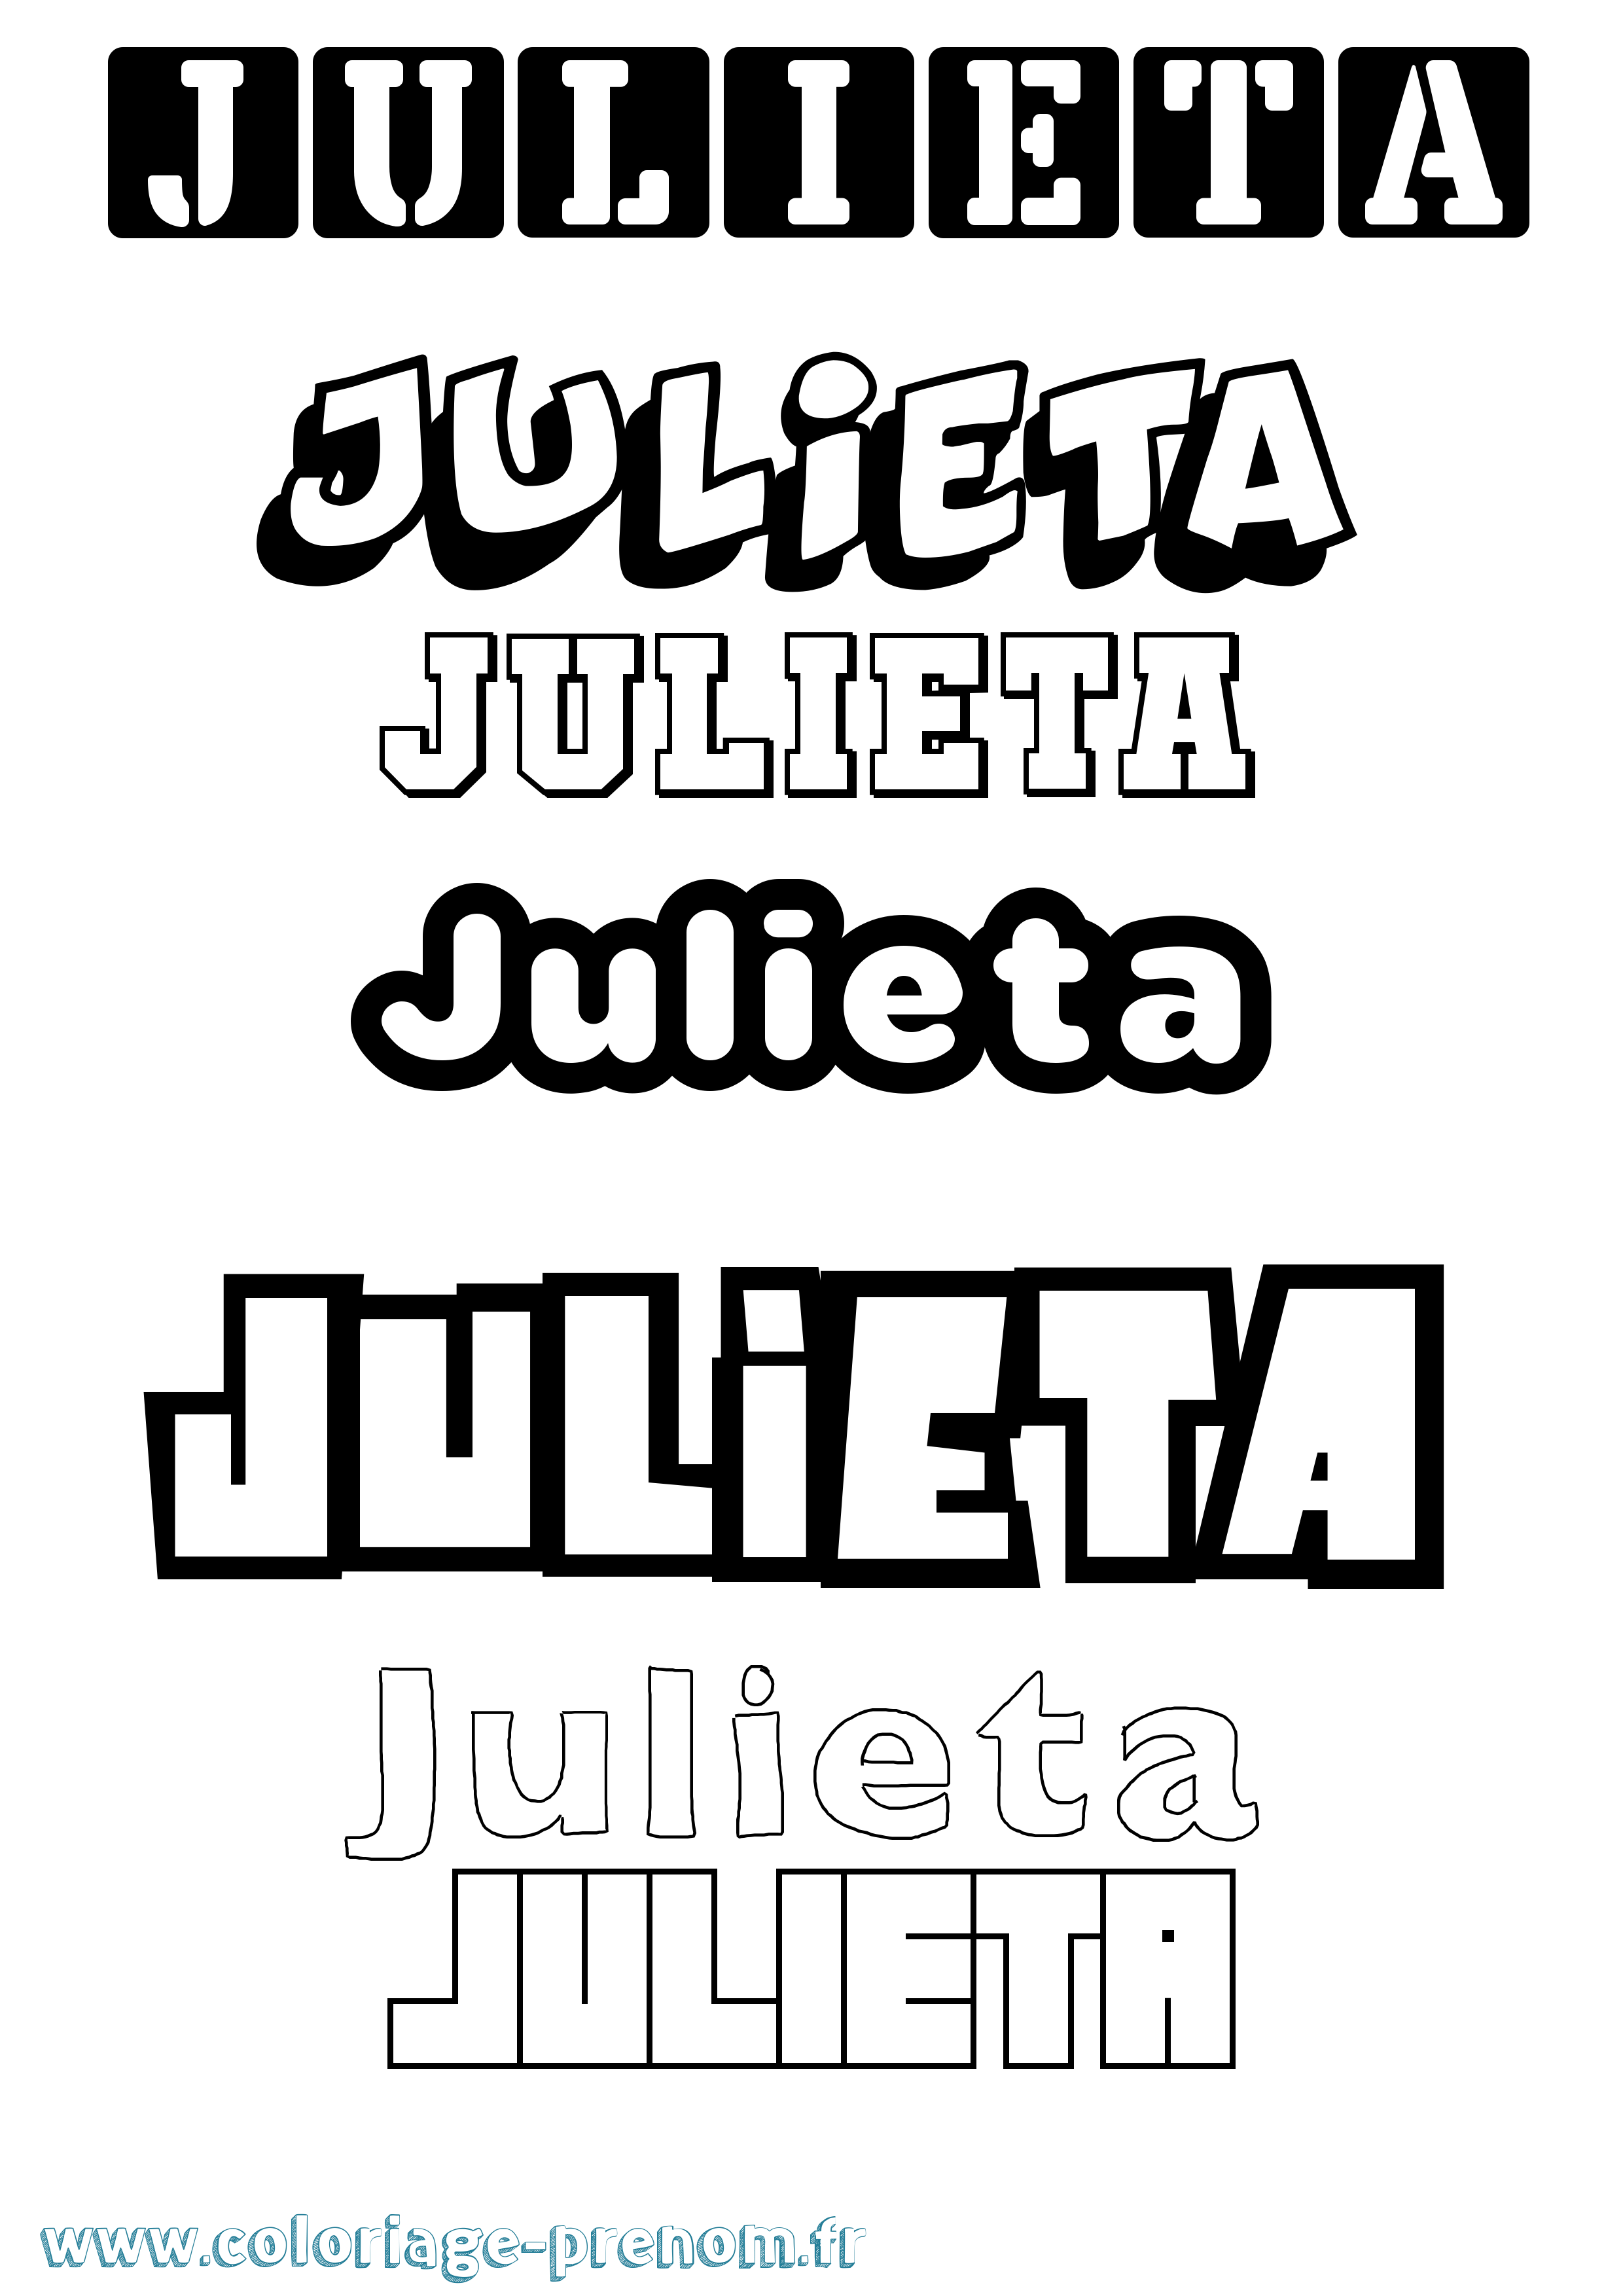 Coloriage prénom Julieta Simple